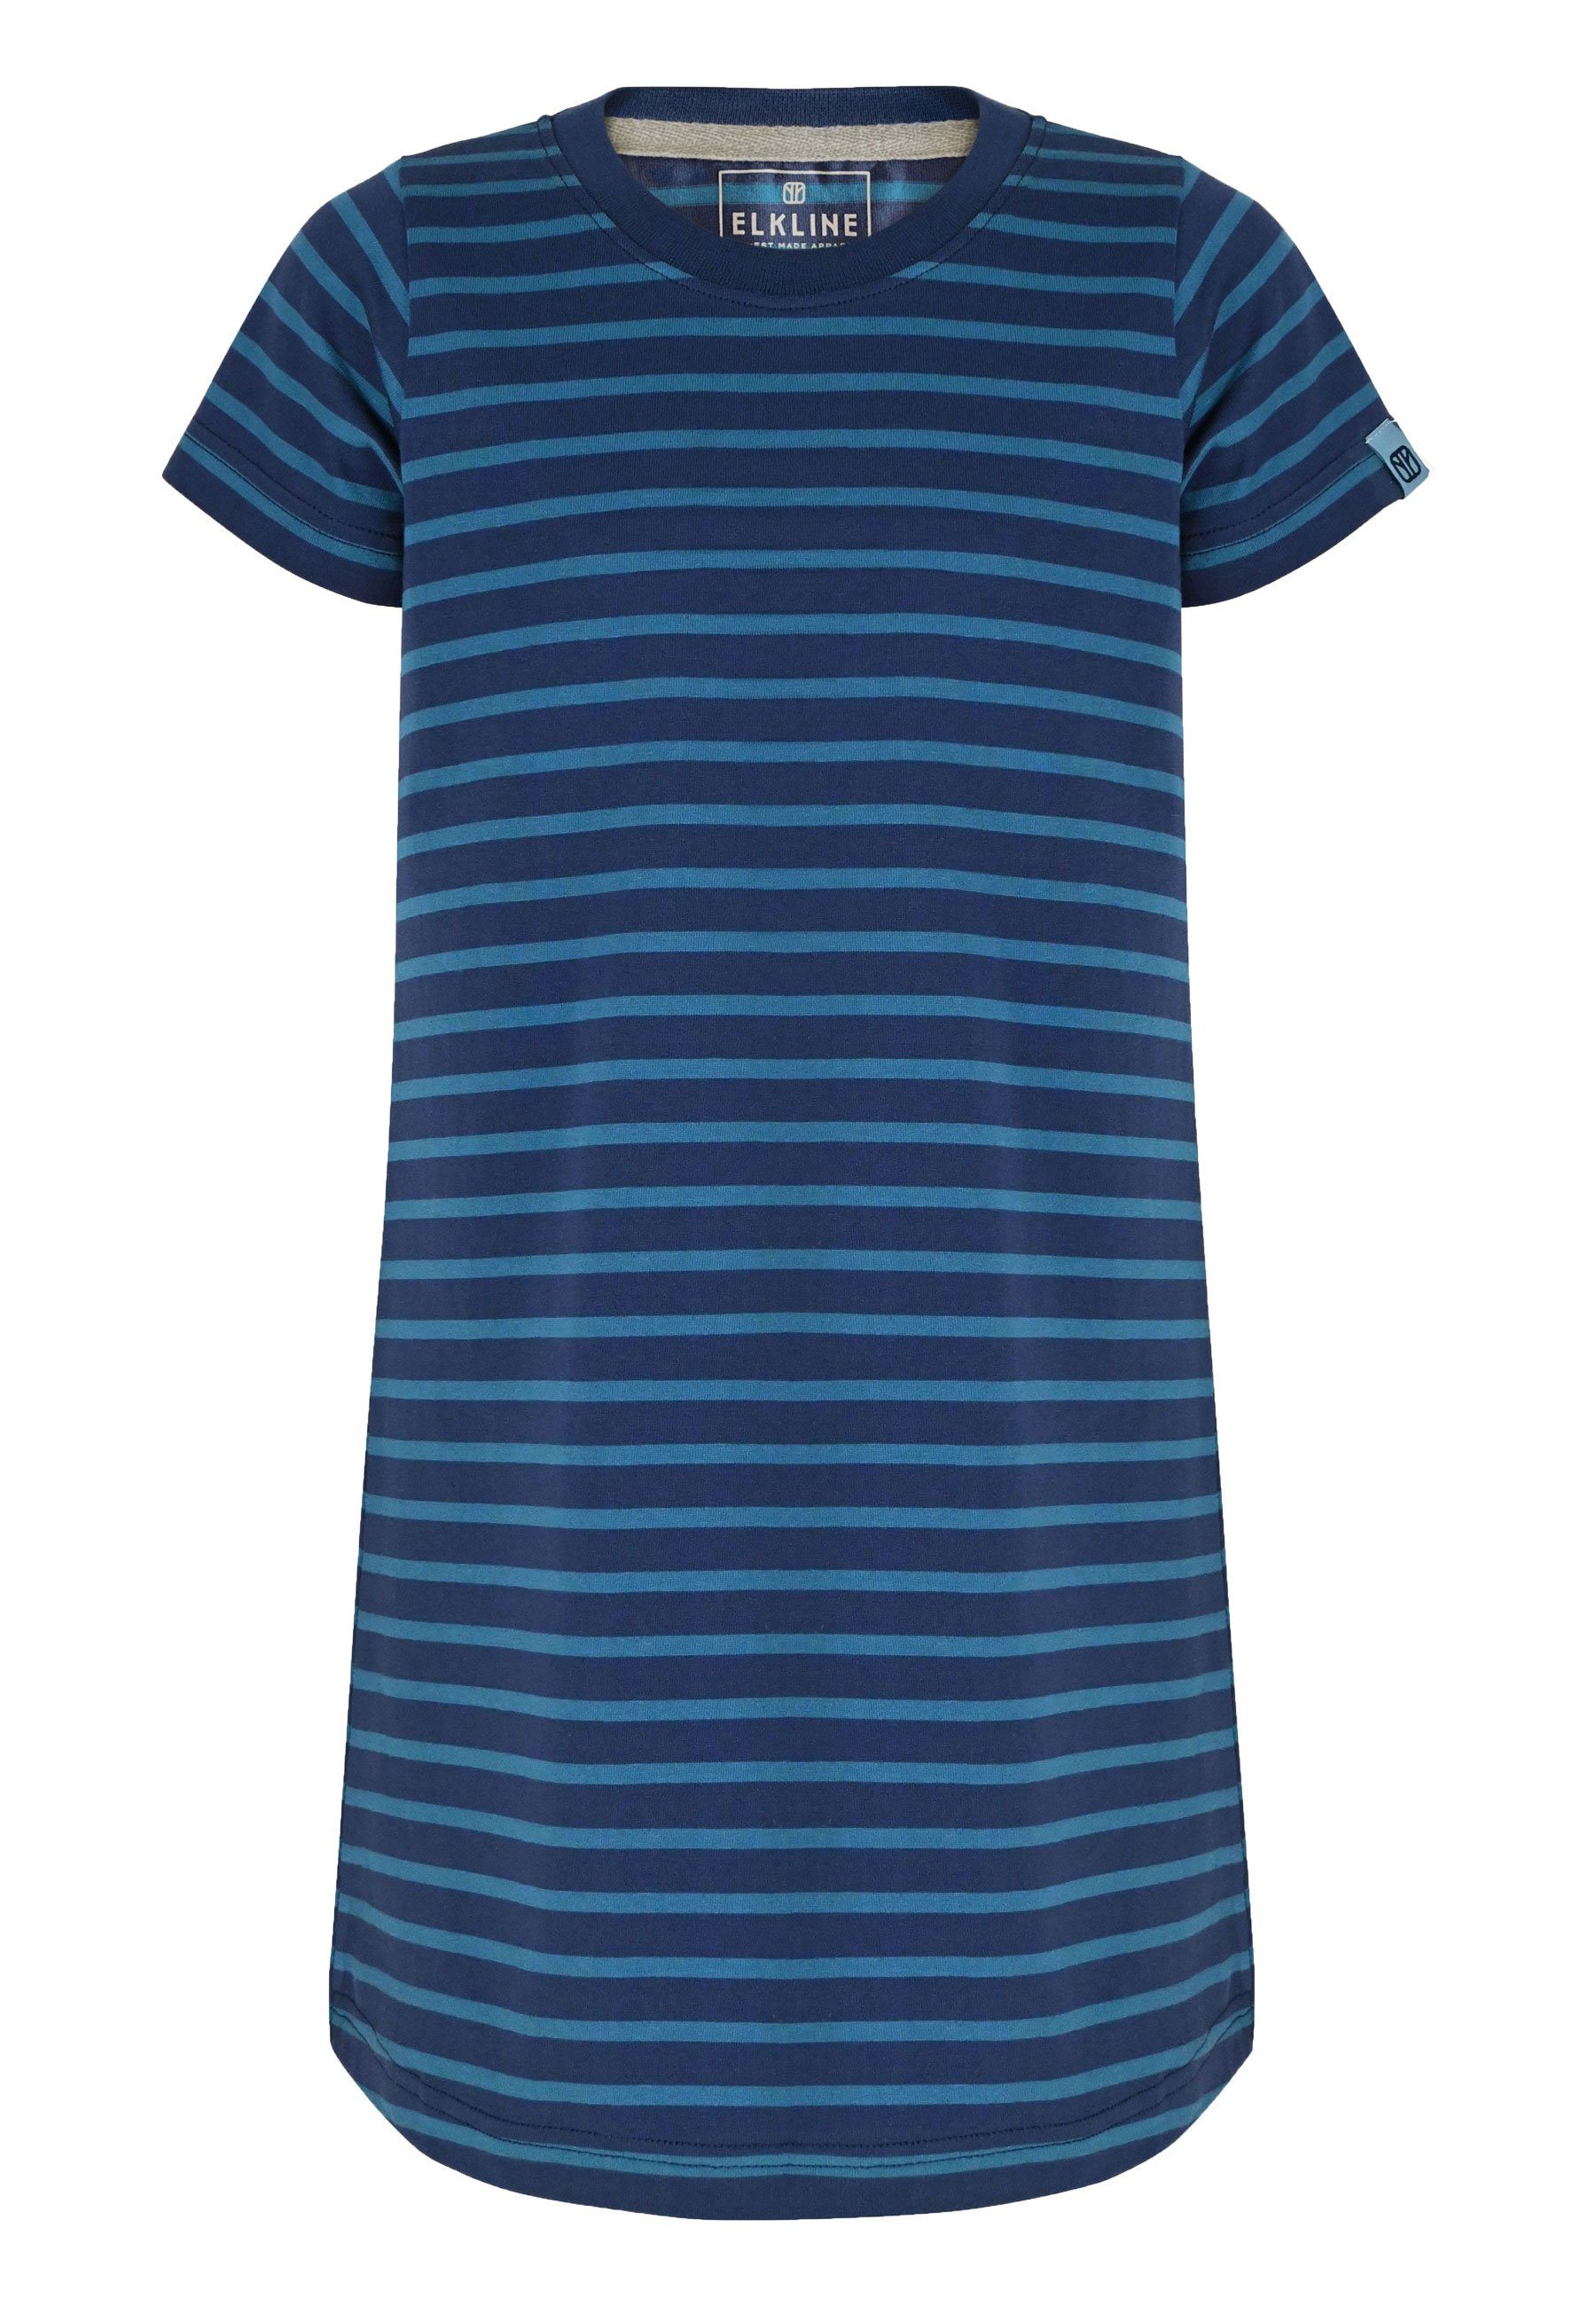 Elkline Sommerkleid Hanna Basic Streifen Shirt-Kleid darkblue - bluecoral